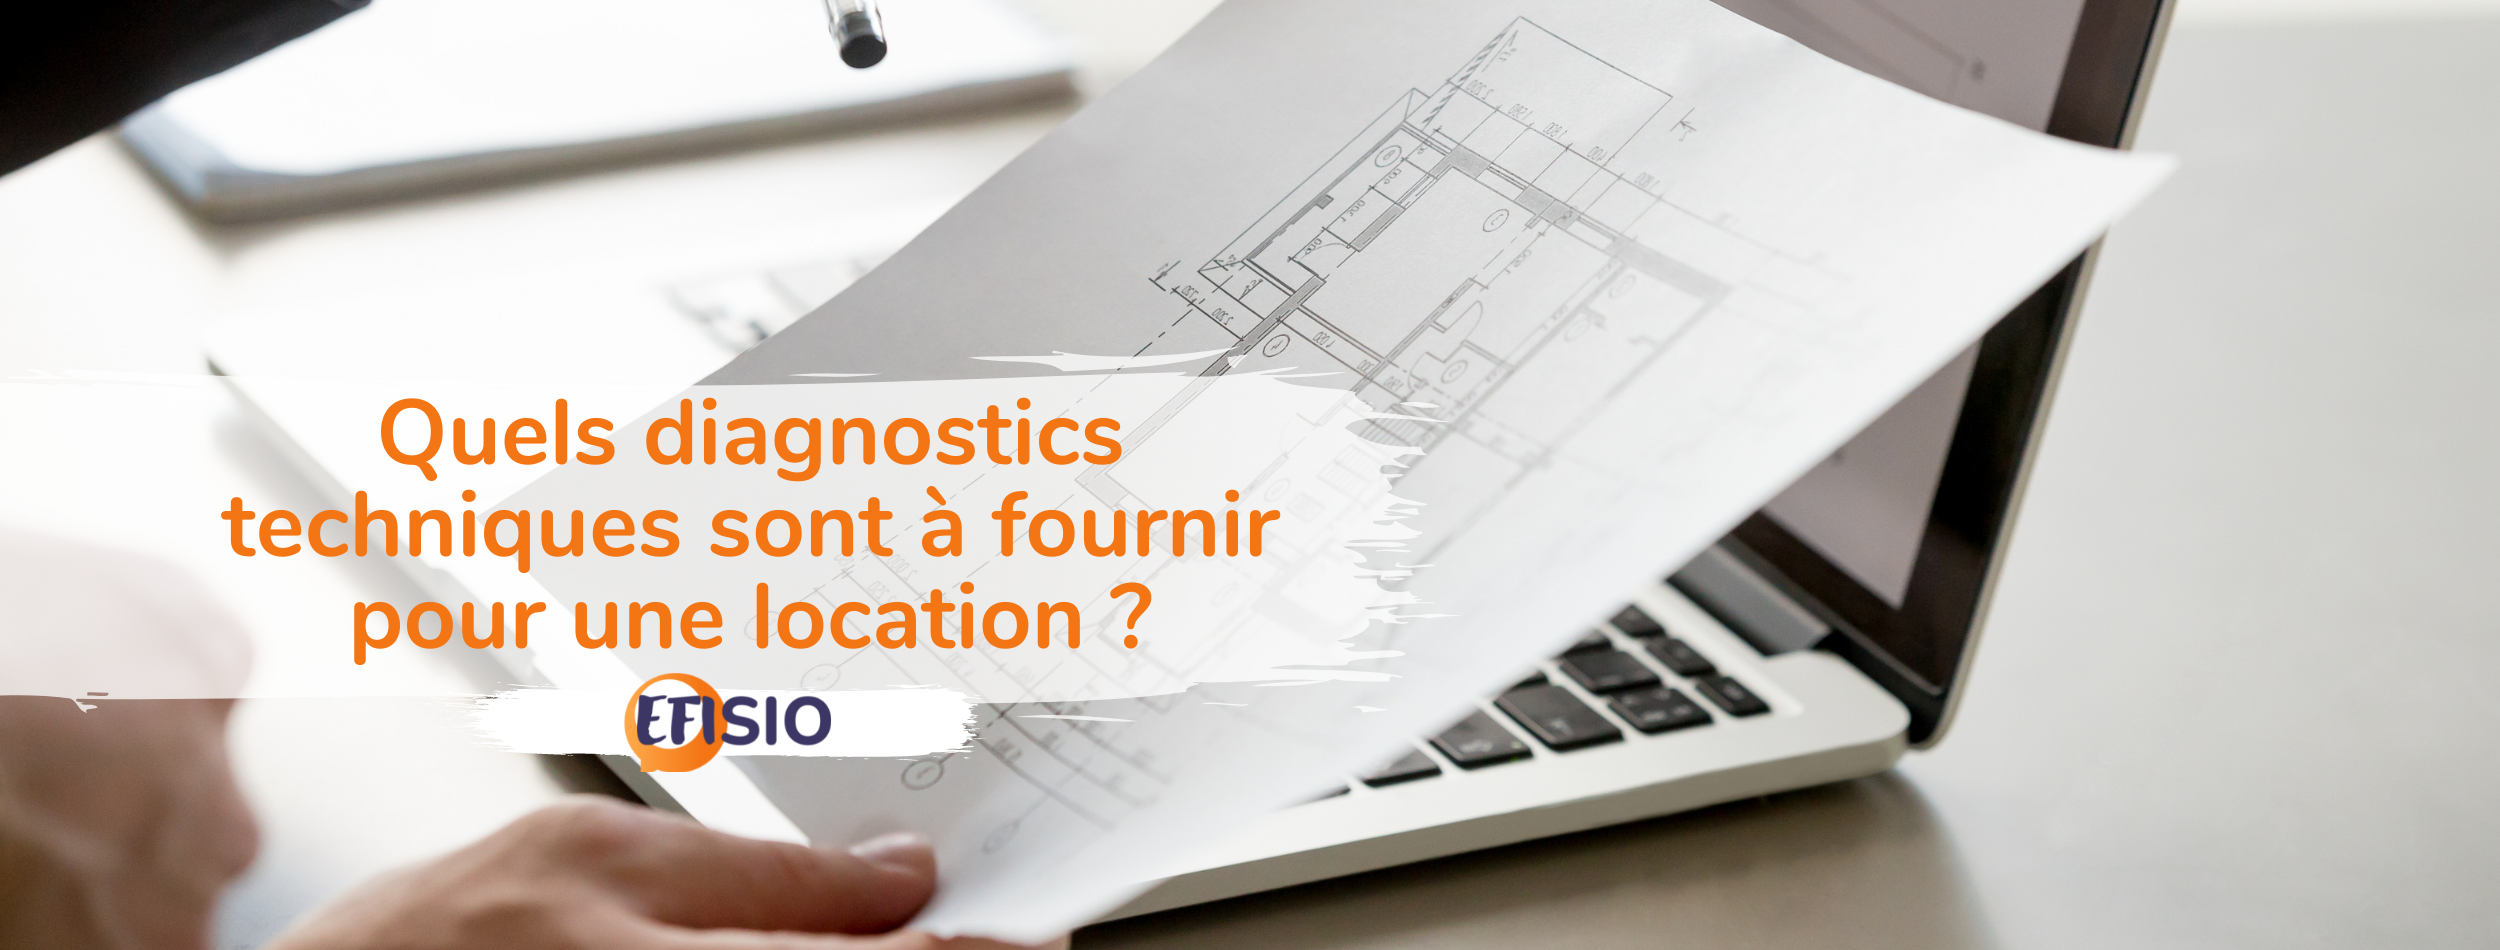 Quels diagnostics techniques sont à fournir pour une location ? 